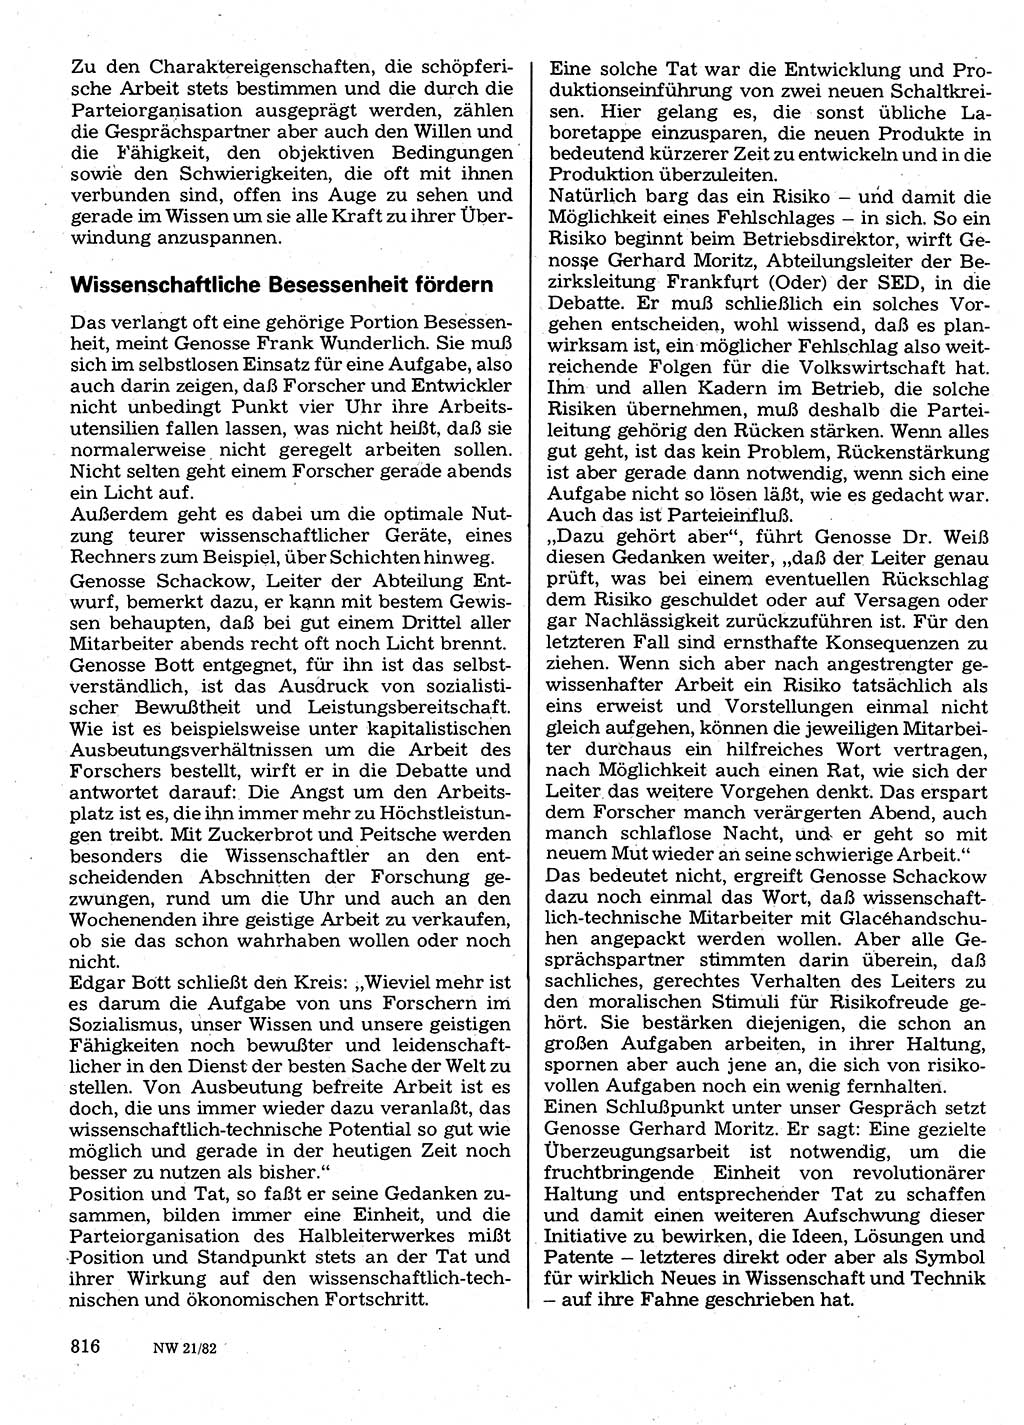 Neuer Weg (NW), Organ des Zentralkomitees (ZK) der SED (Sozialistische Einheitspartei Deutschlands) für Fragen des Parteilebens, 37. Jahrgang [Deutsche Demokratische Republik (DDR)] 1982, Seite 816 (NW ZK SED DDR 1982, S. 816)